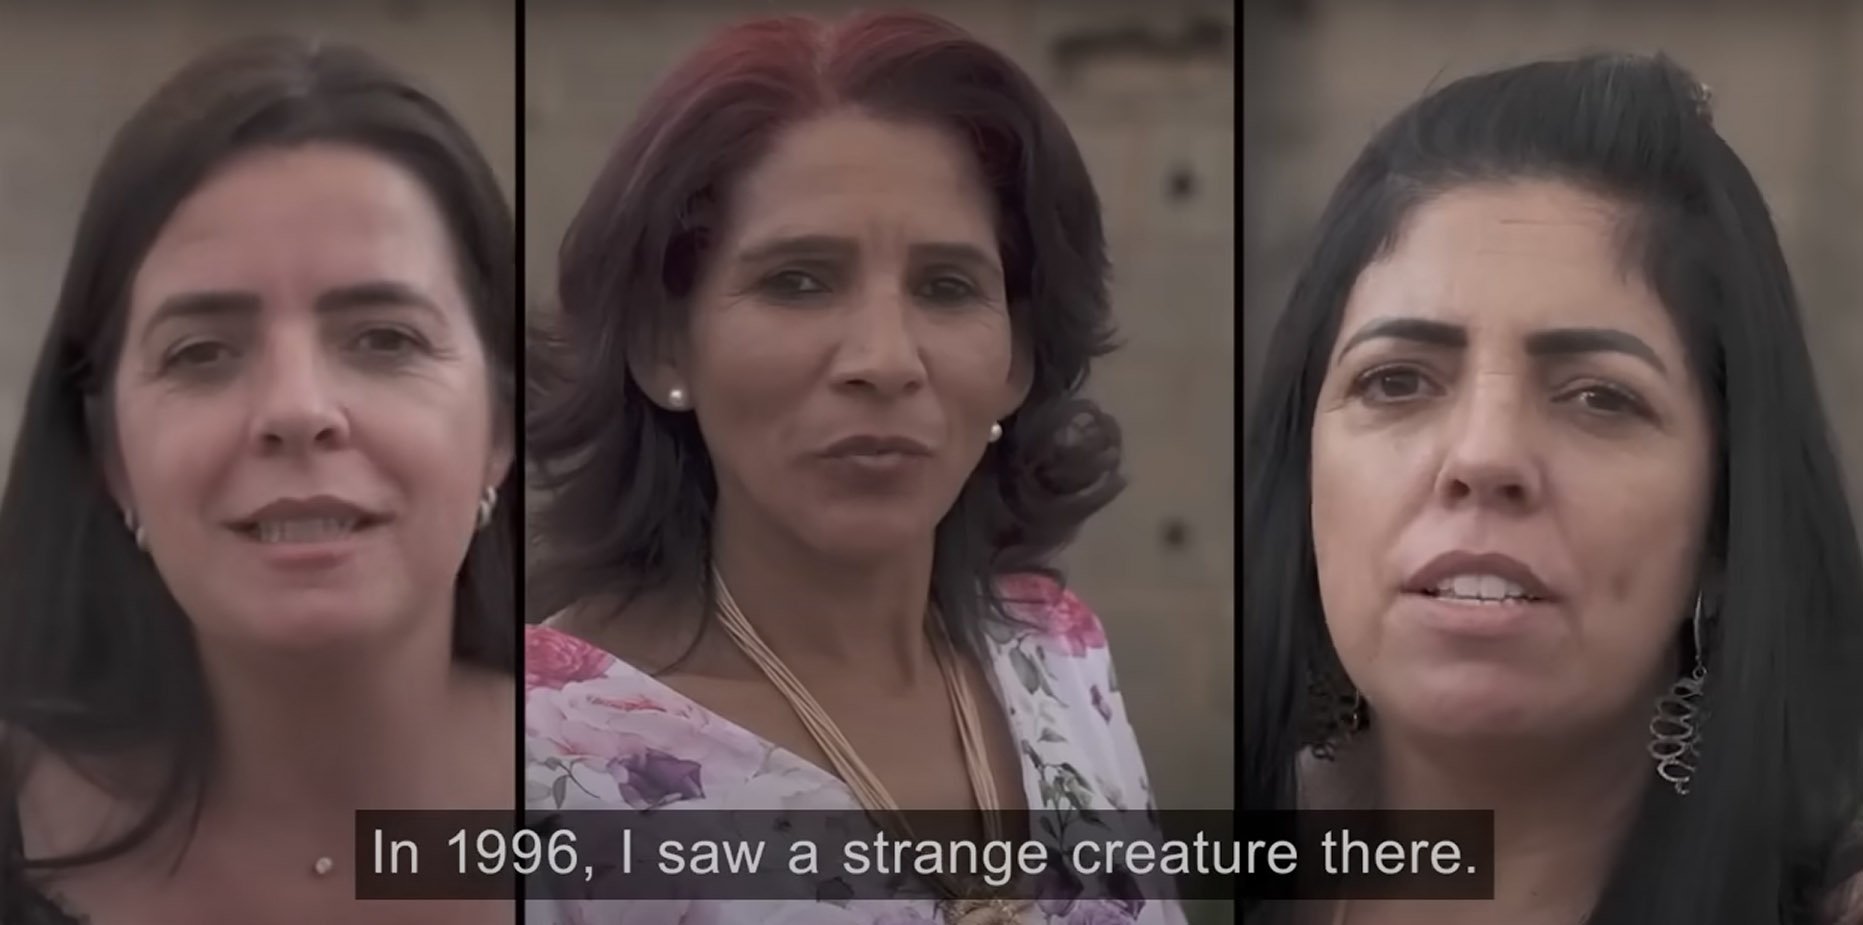 Liliane, Valquiria e Kátia reafirmaram sua história no documentário Moment of Contact.